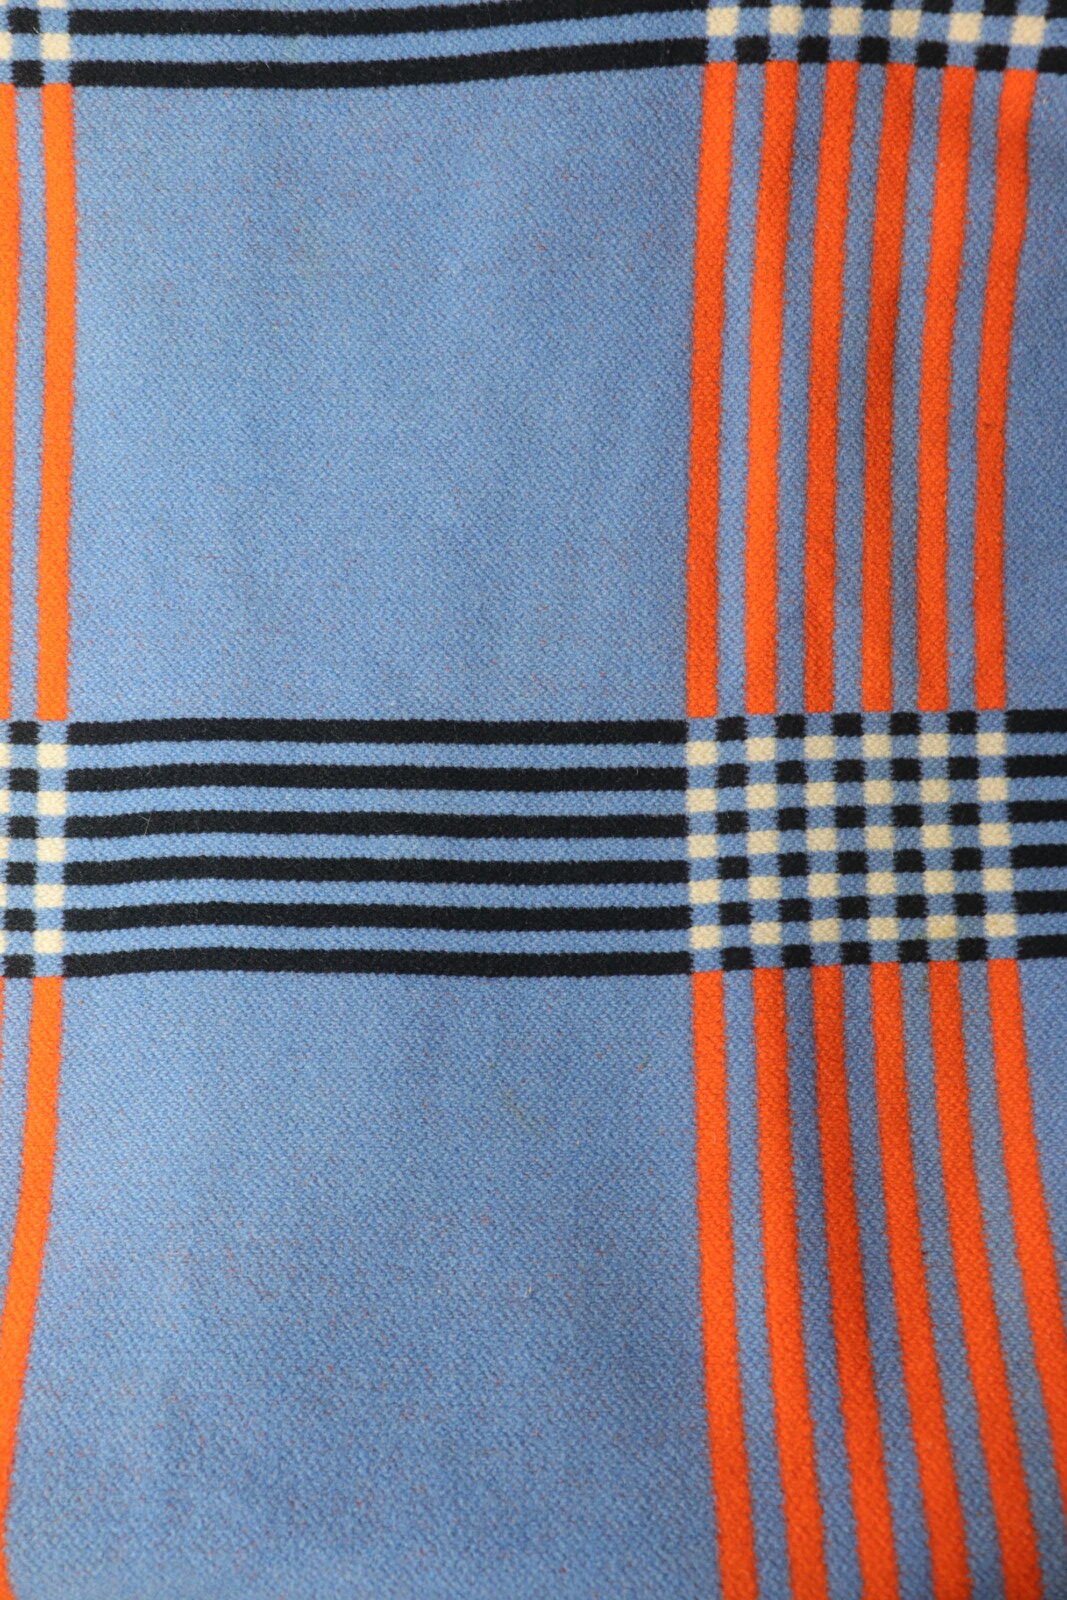 Argentine,wool blanket,vintage,1950's